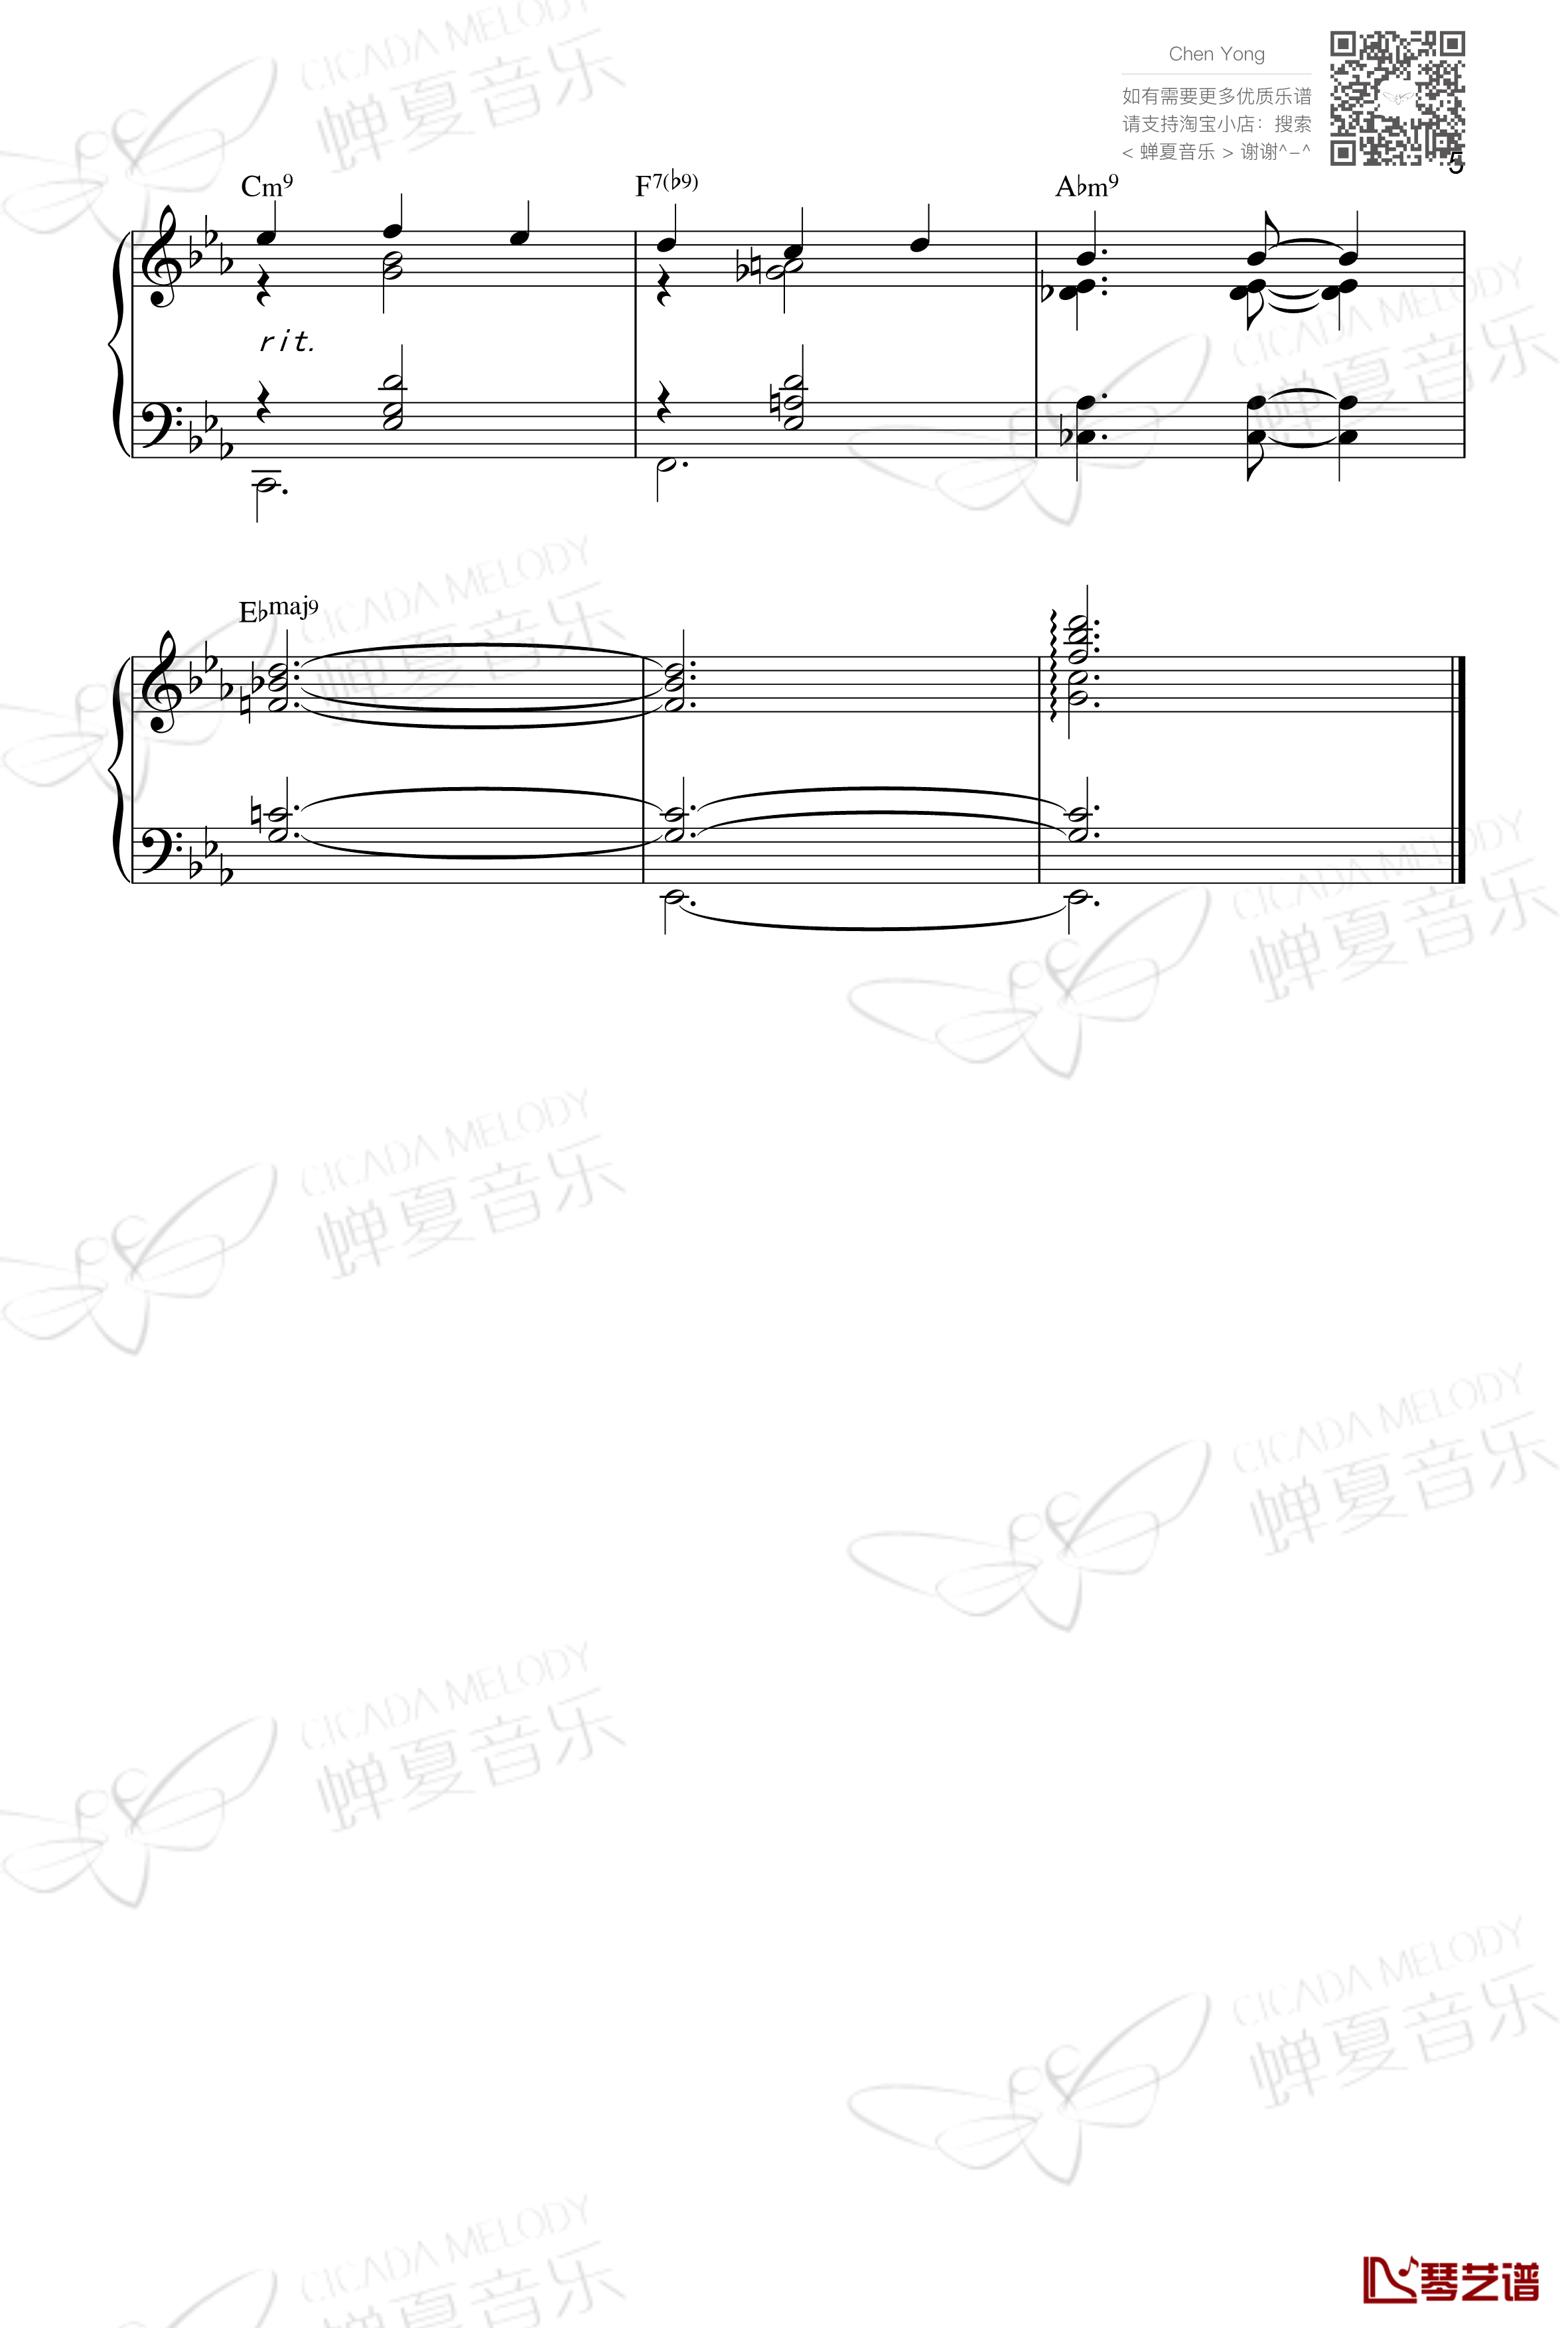 夜曲钢琴谱-肖邦-chopin5